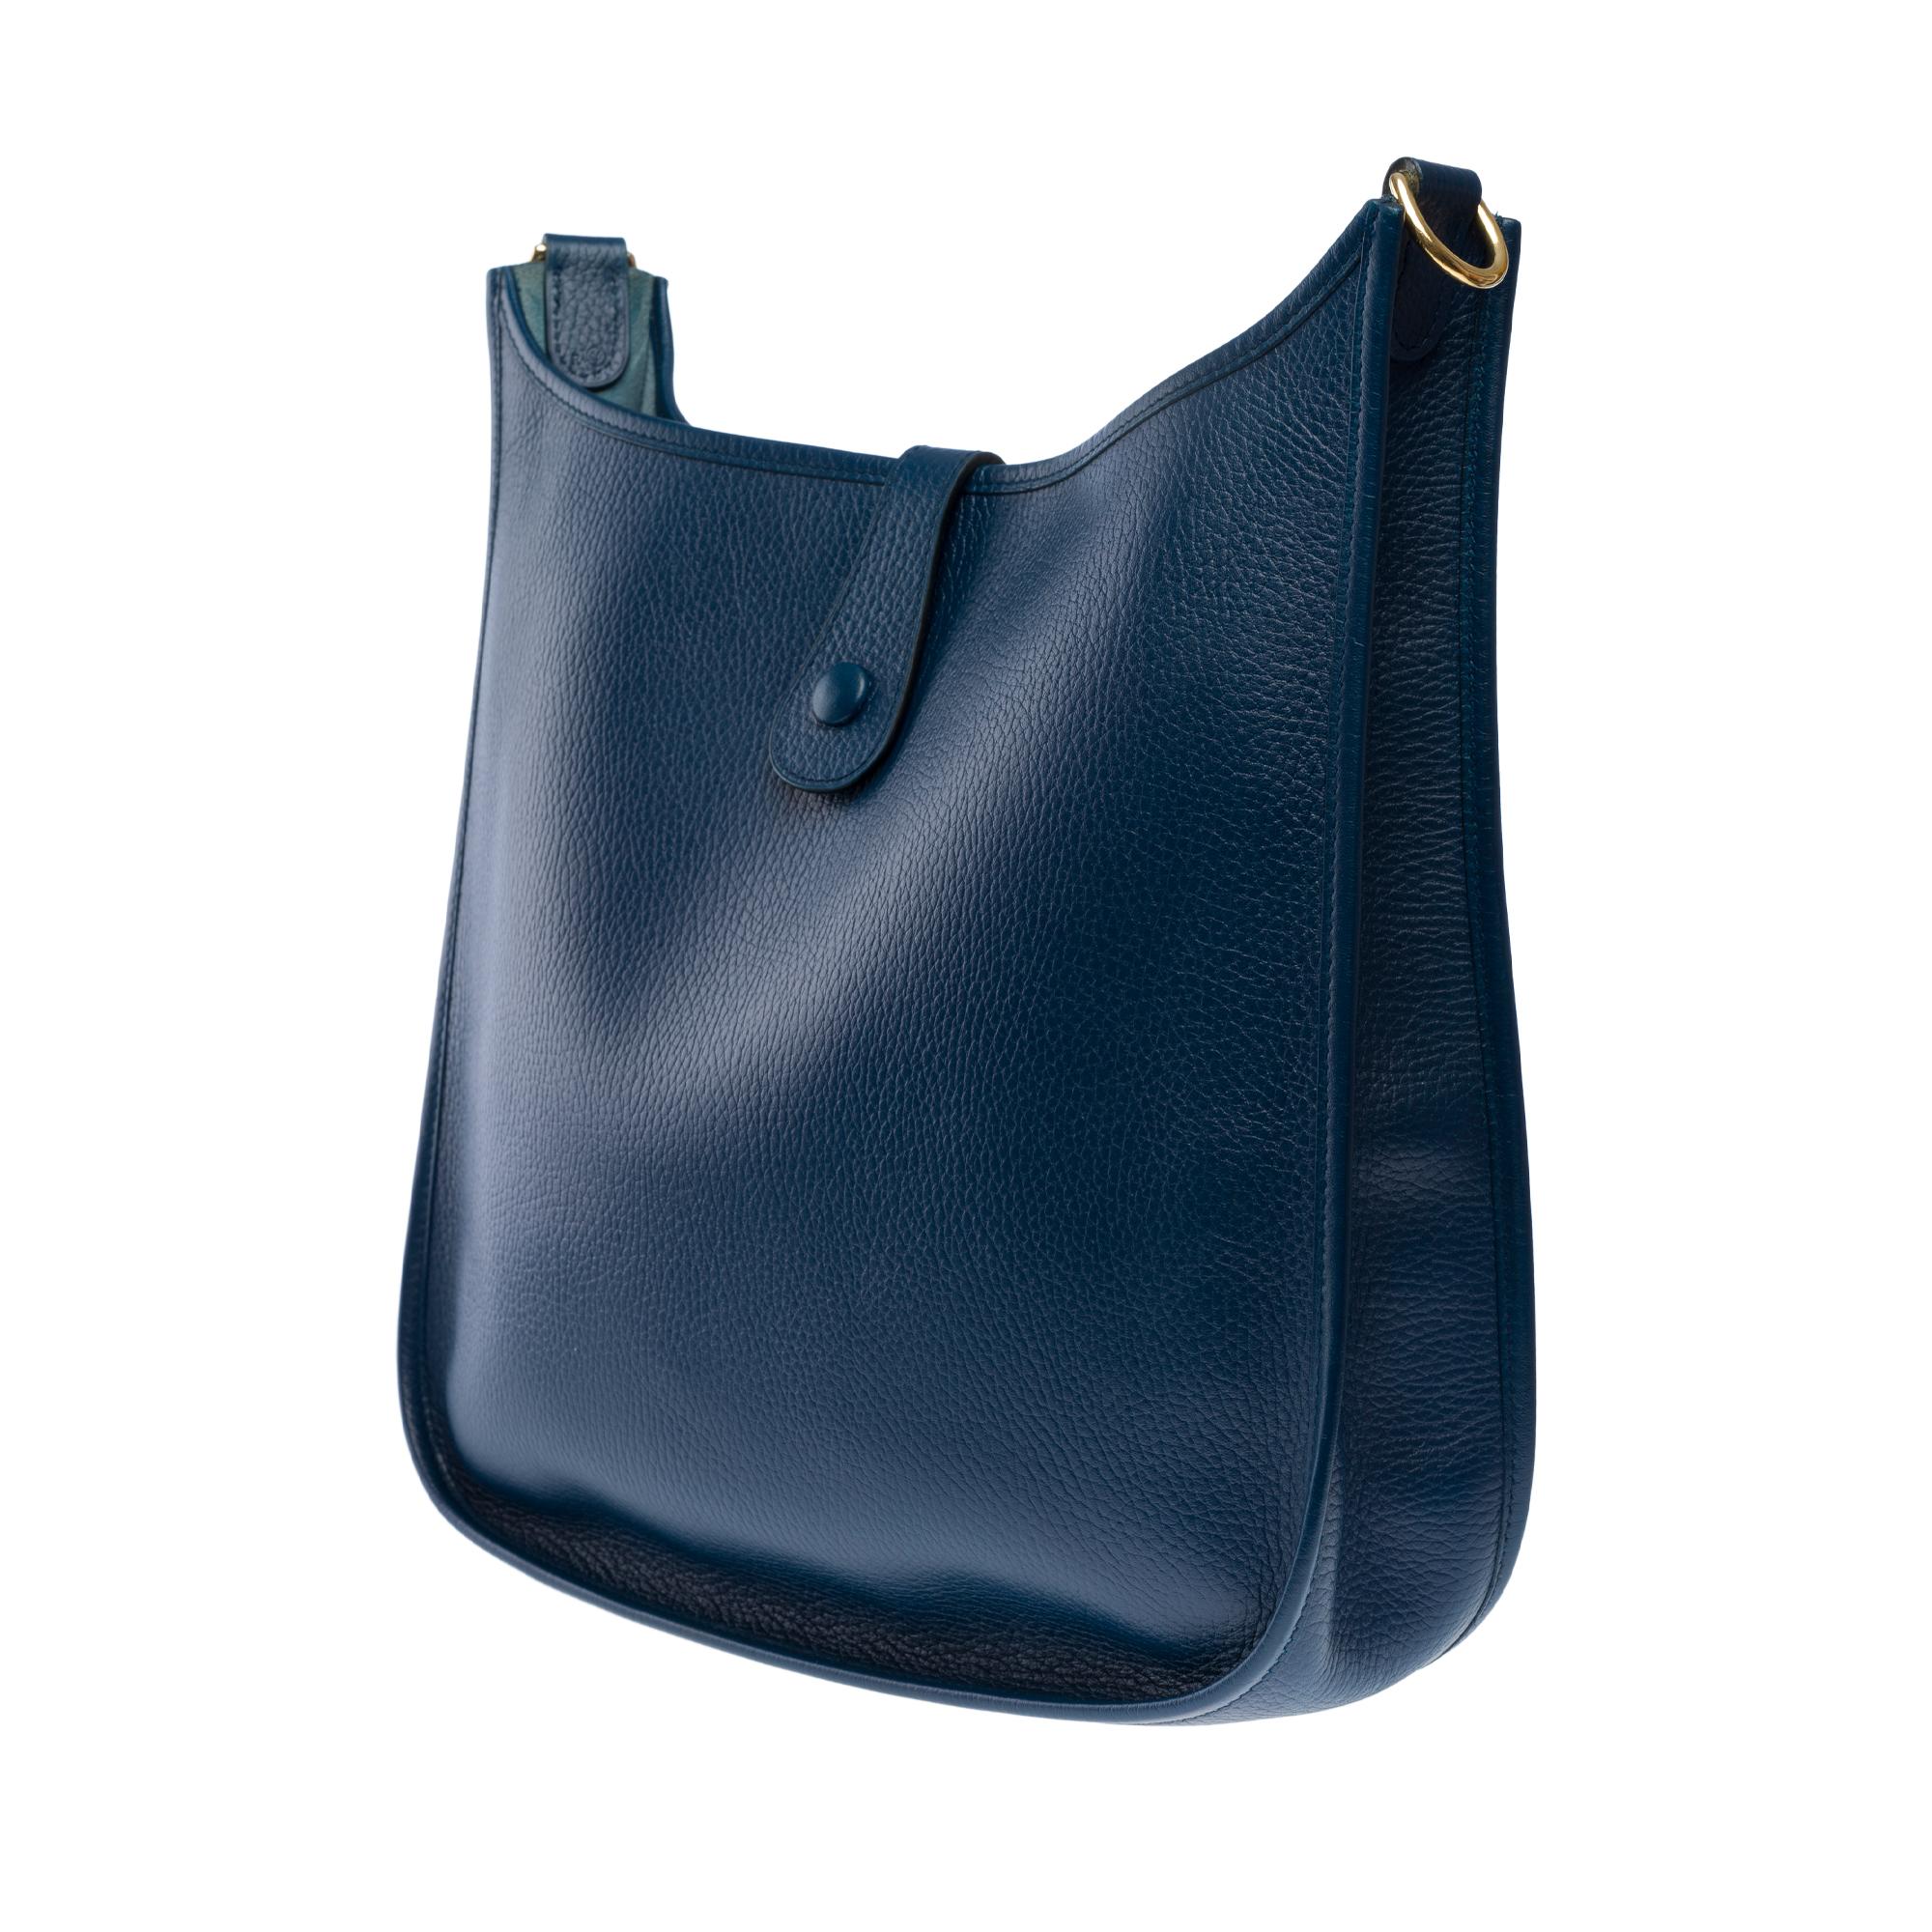 Hermès Evelyne GM  shoulder bag in Navy Blue Taurillon Clemence leather, GHW For Sale 3